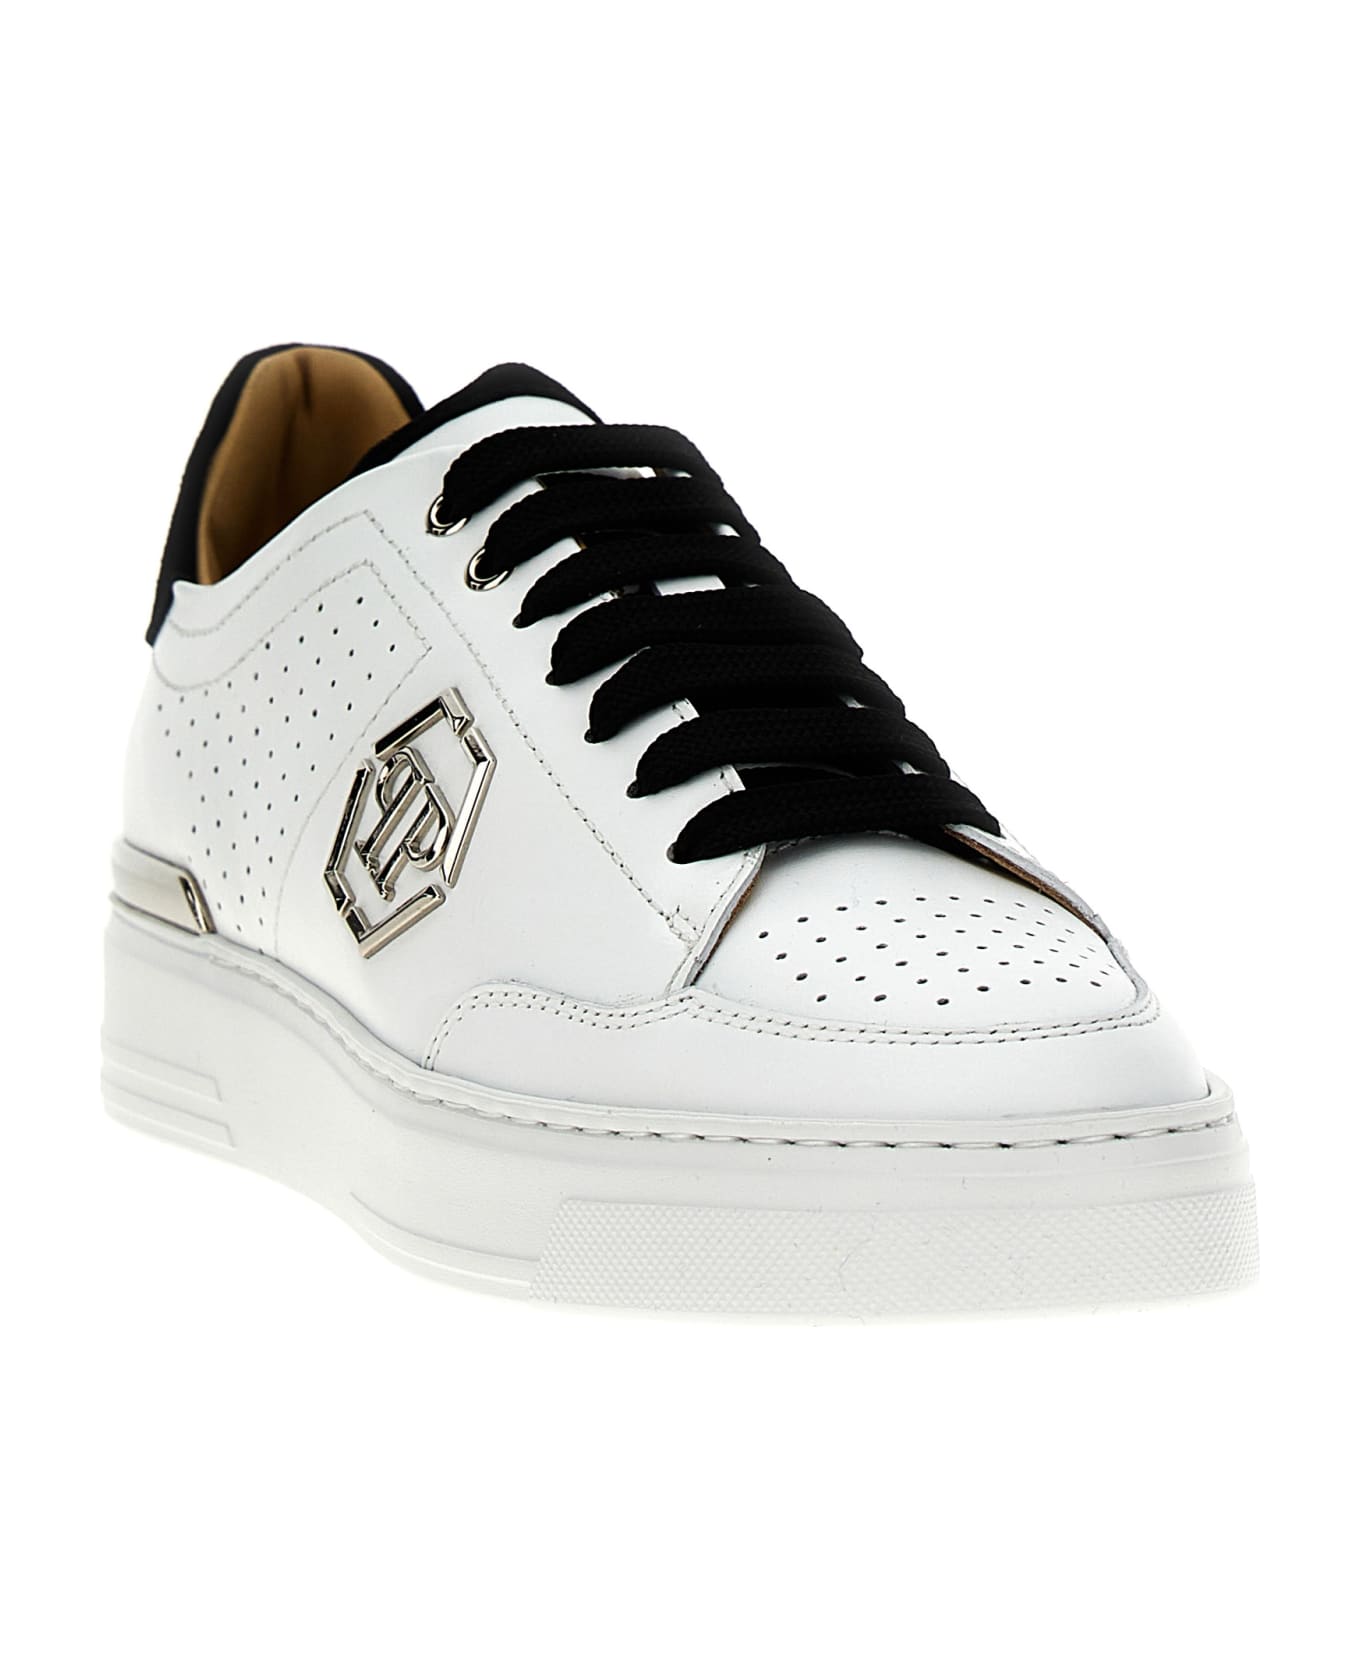 Philipp Plein 'mix Leather Lo-top' Sneakers - White/Black